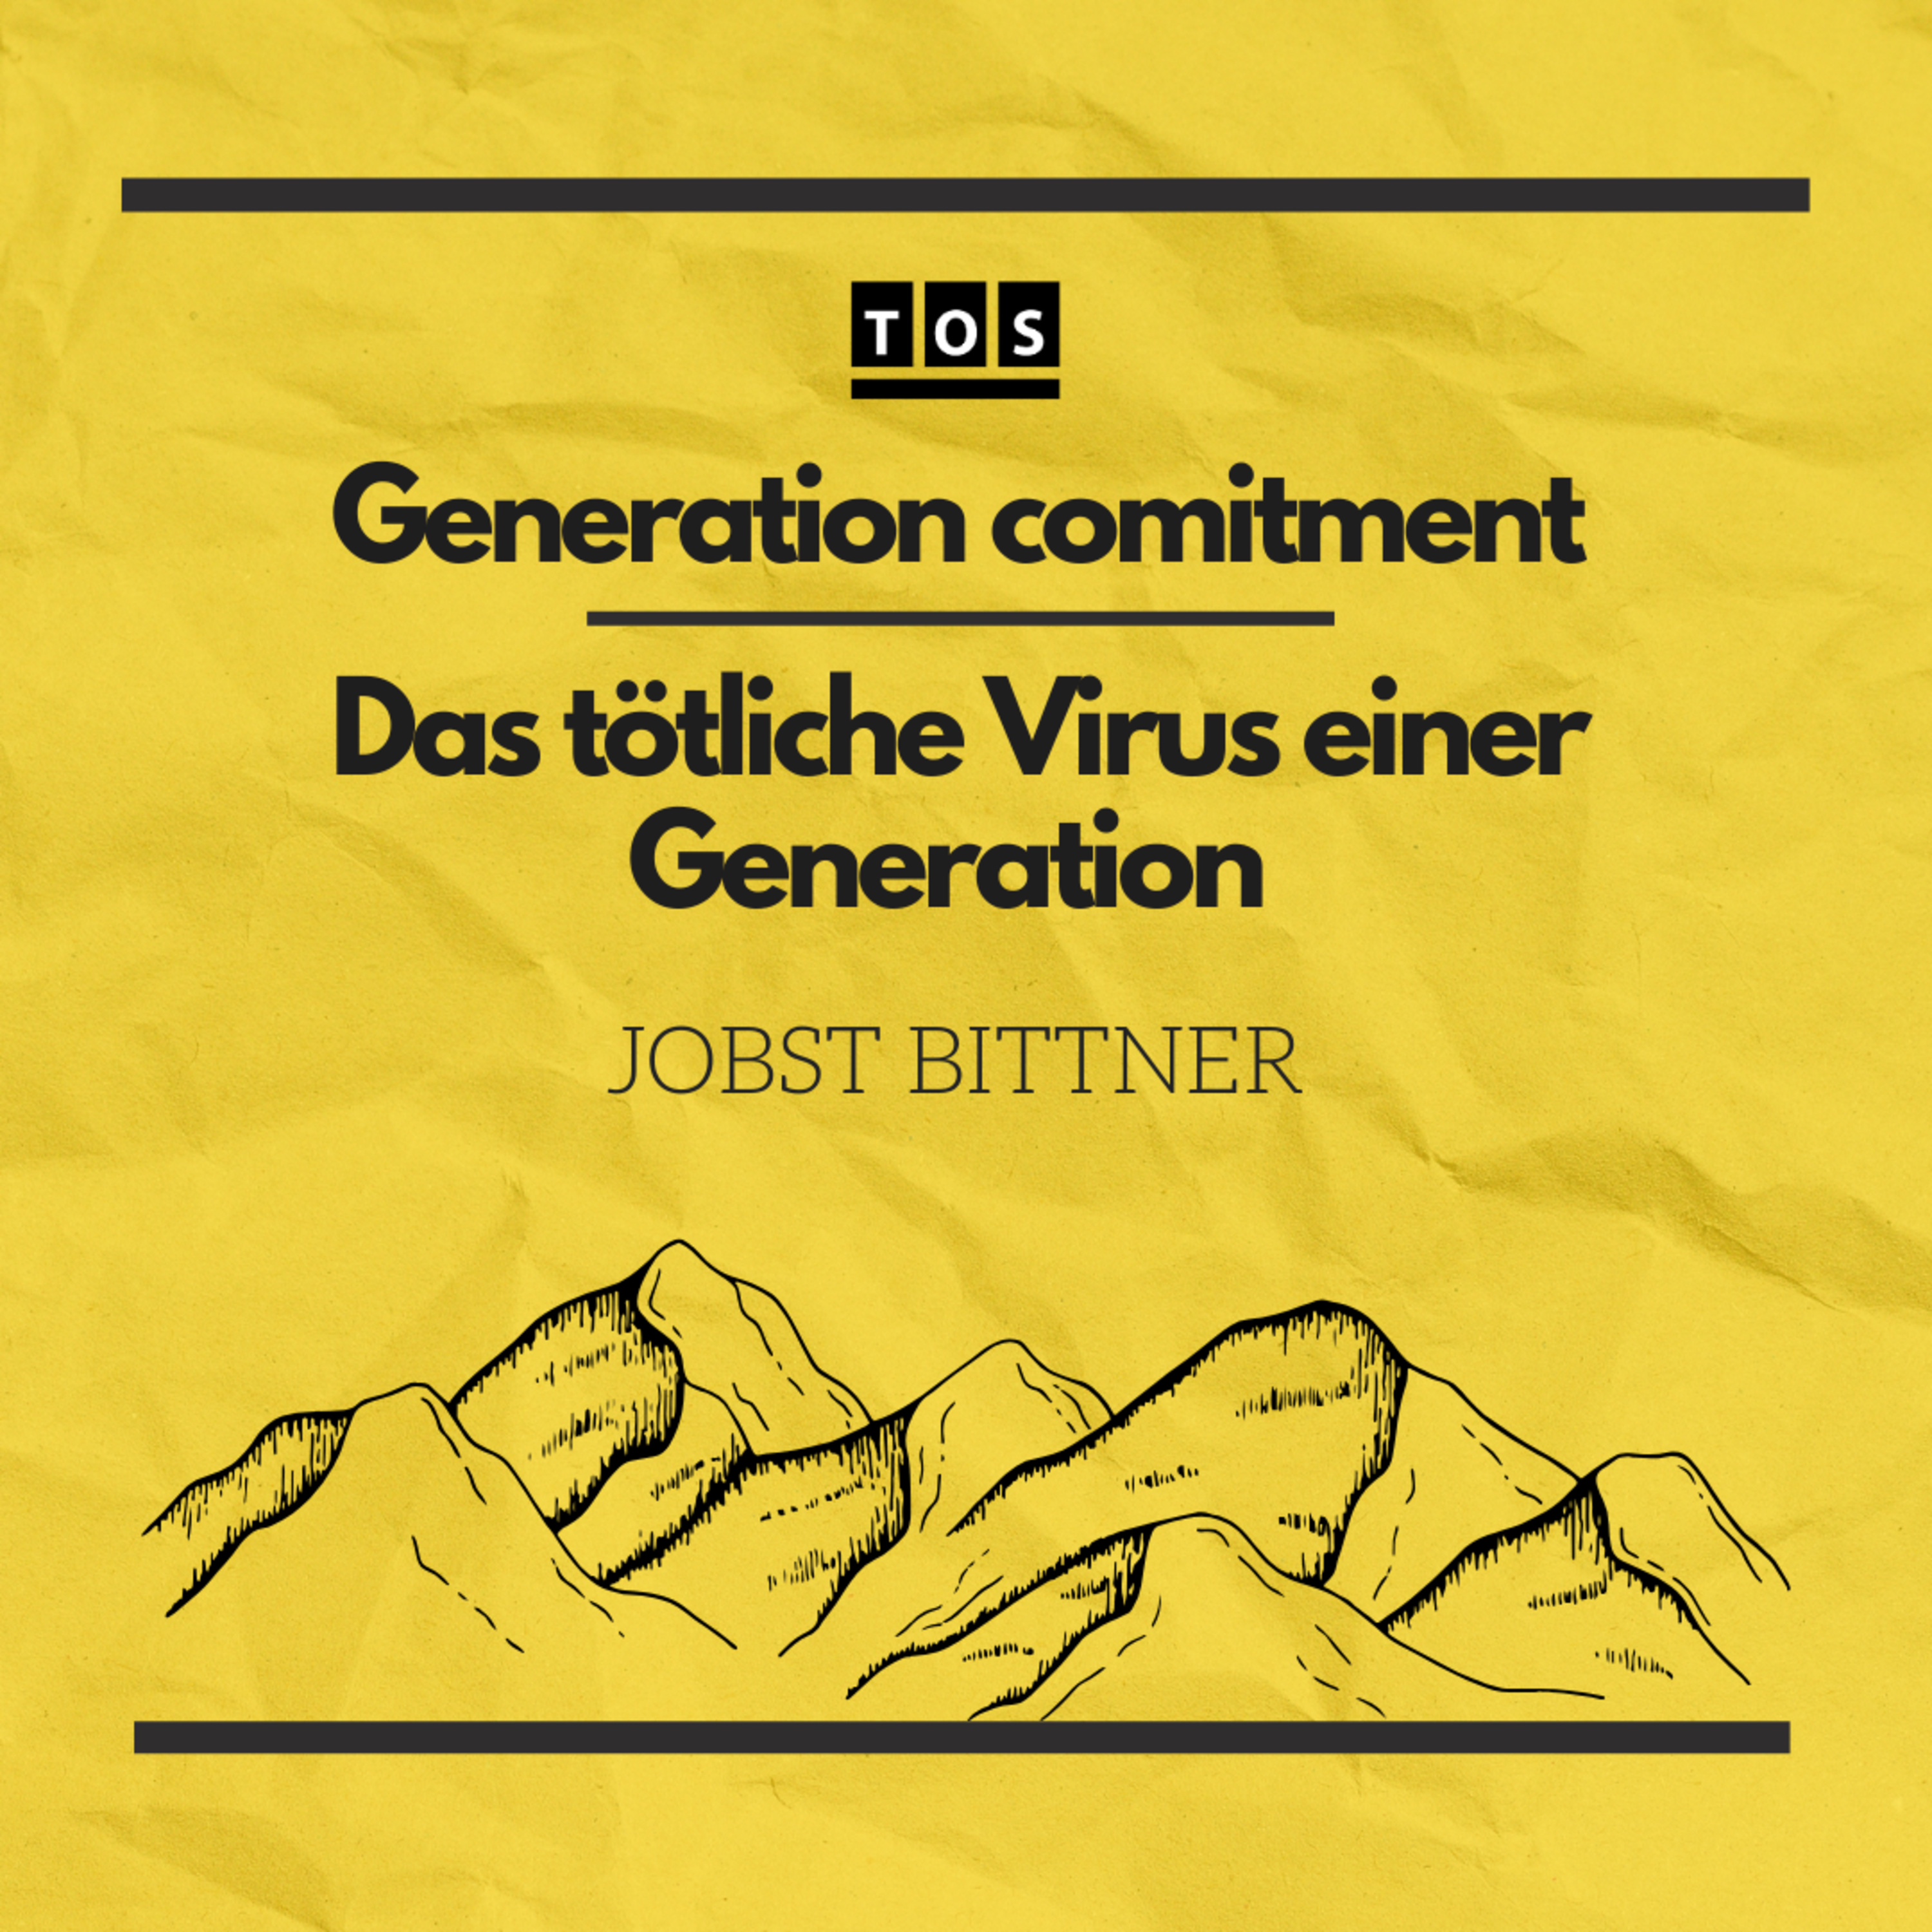 Jobst Bittner - Generation Commitment | Das tödliche Virus einer Generation hero artwork